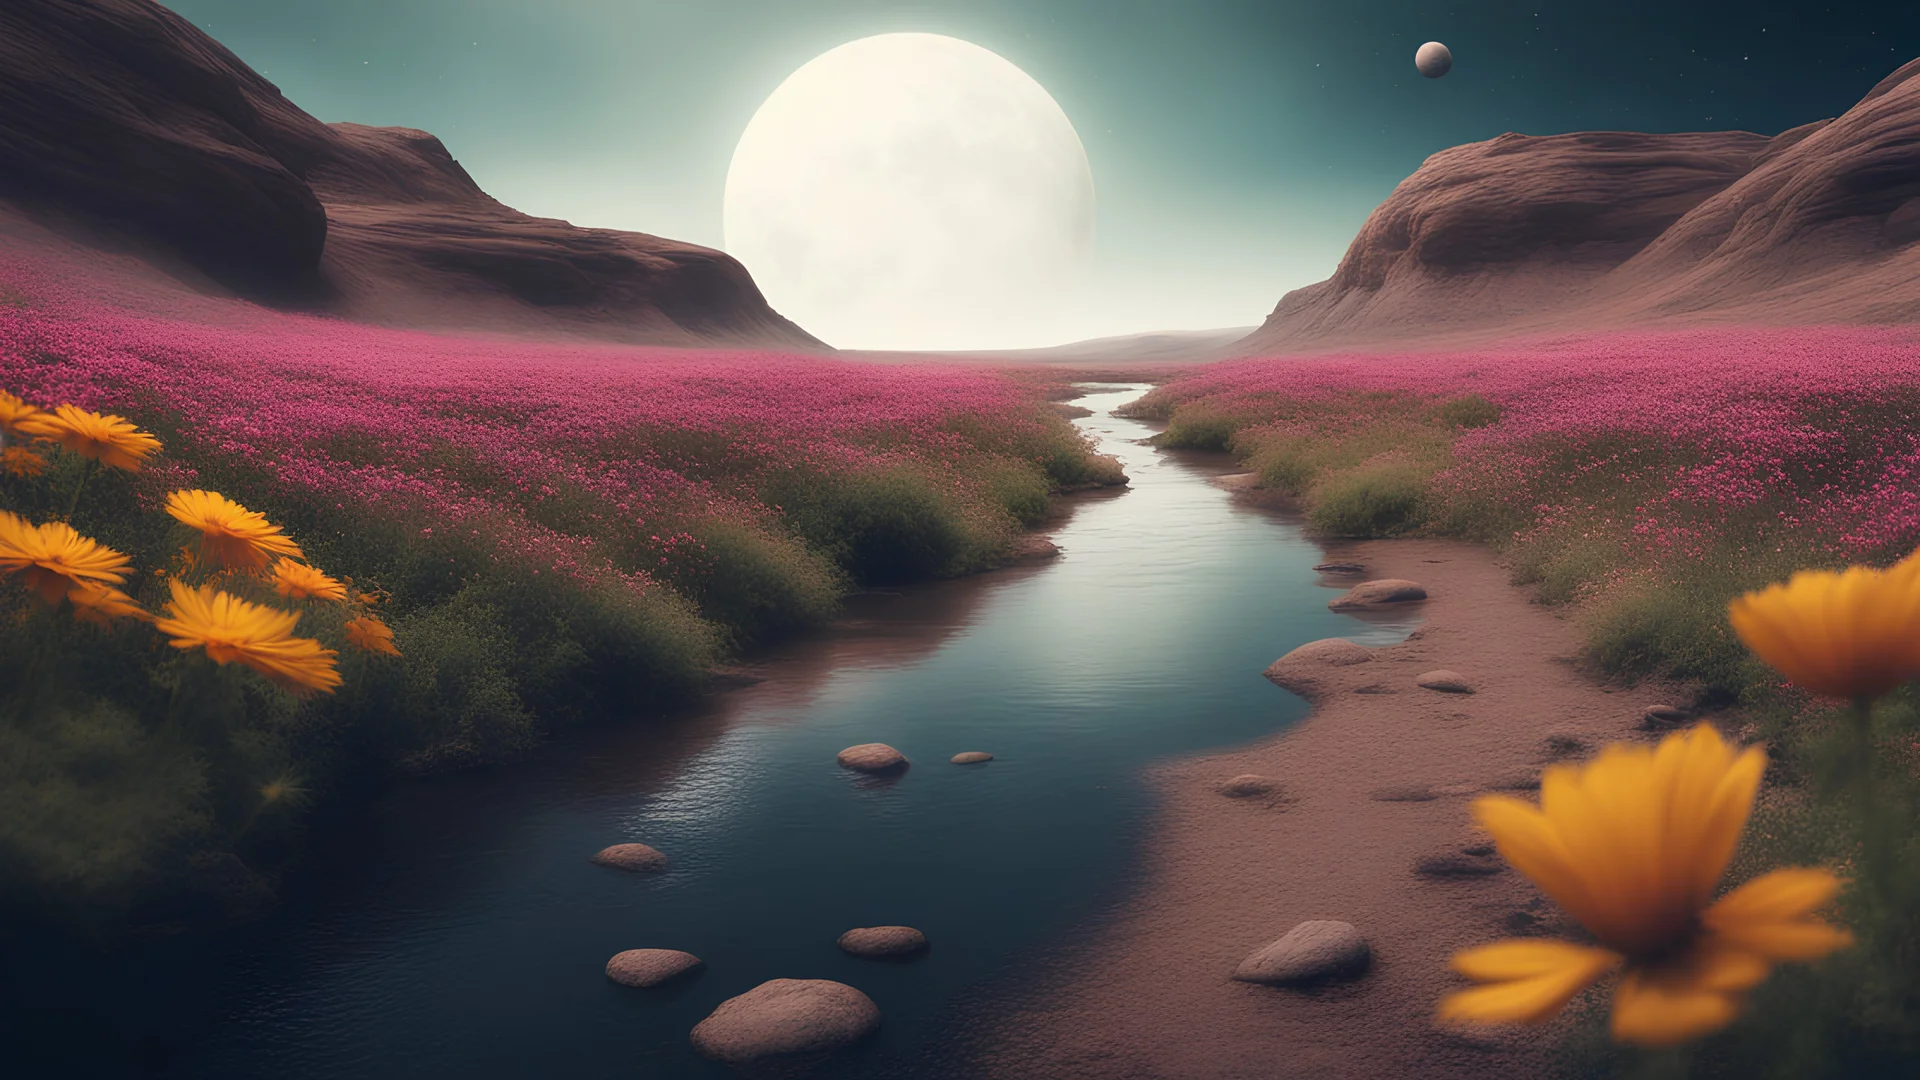 другая планета, река, астронавт, на берегах цветы - в стиле фотографии